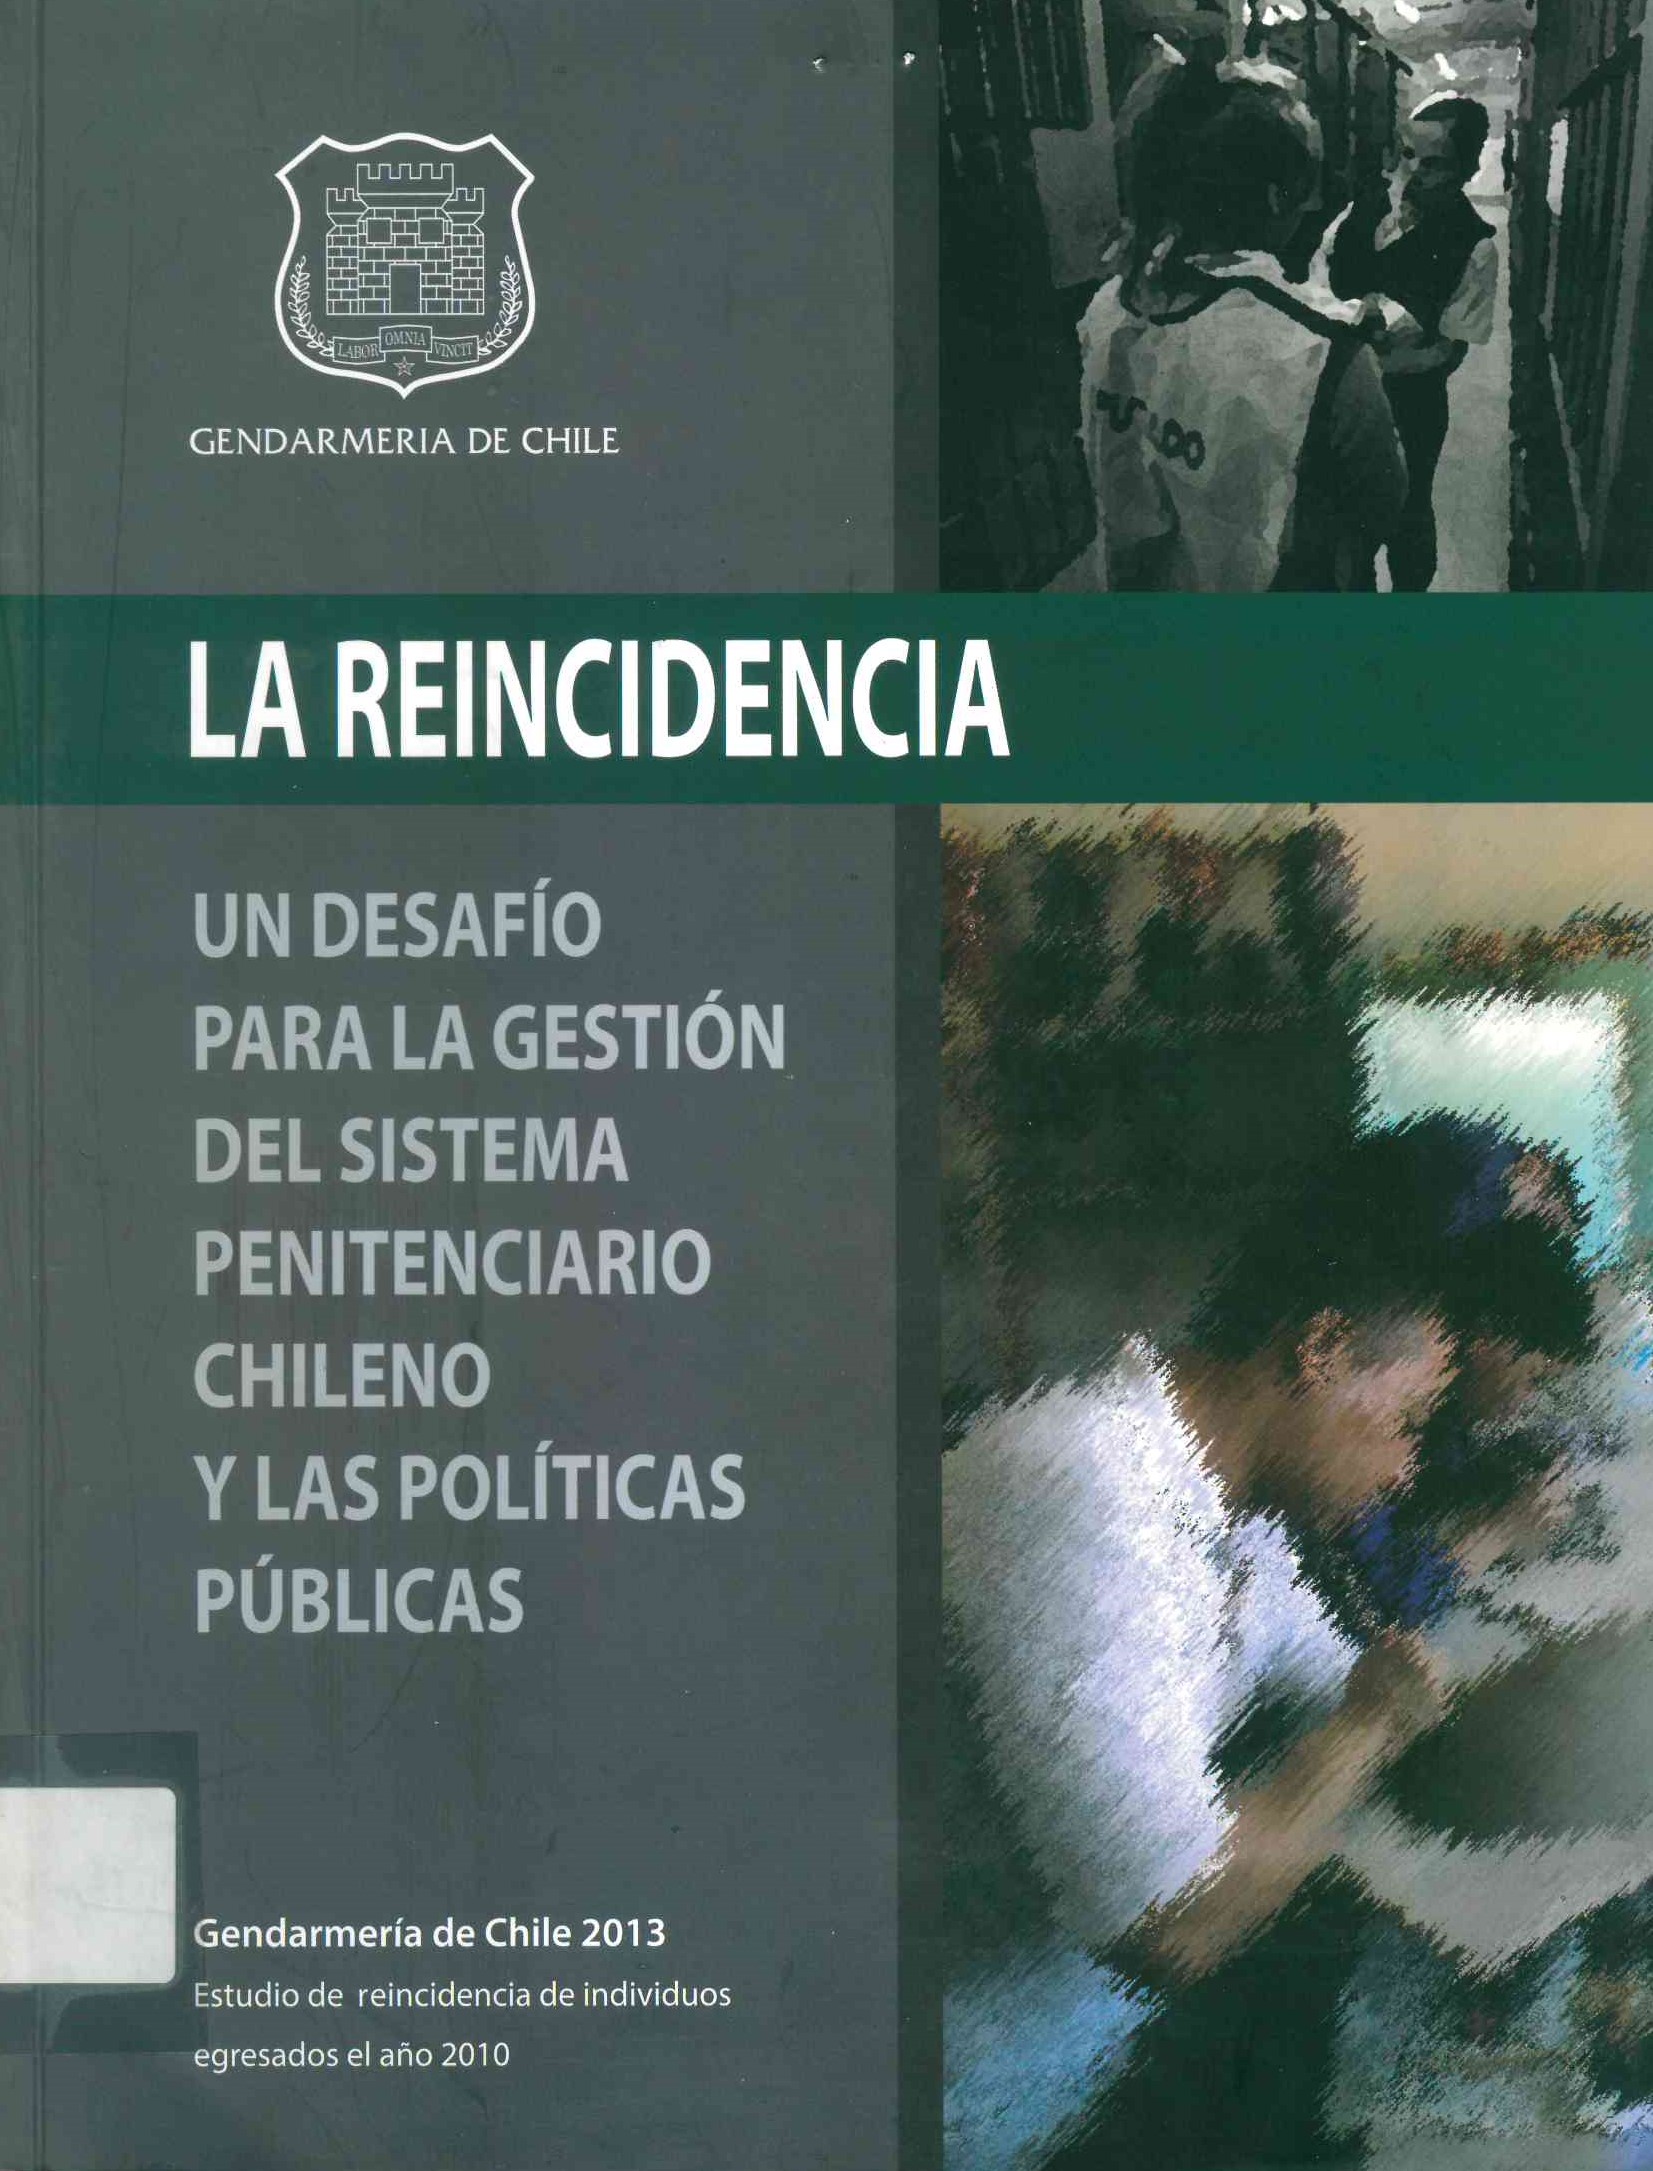 La reincidencia. Un desafio para gestión del sistema penitenciario chileno y las políticas públicas